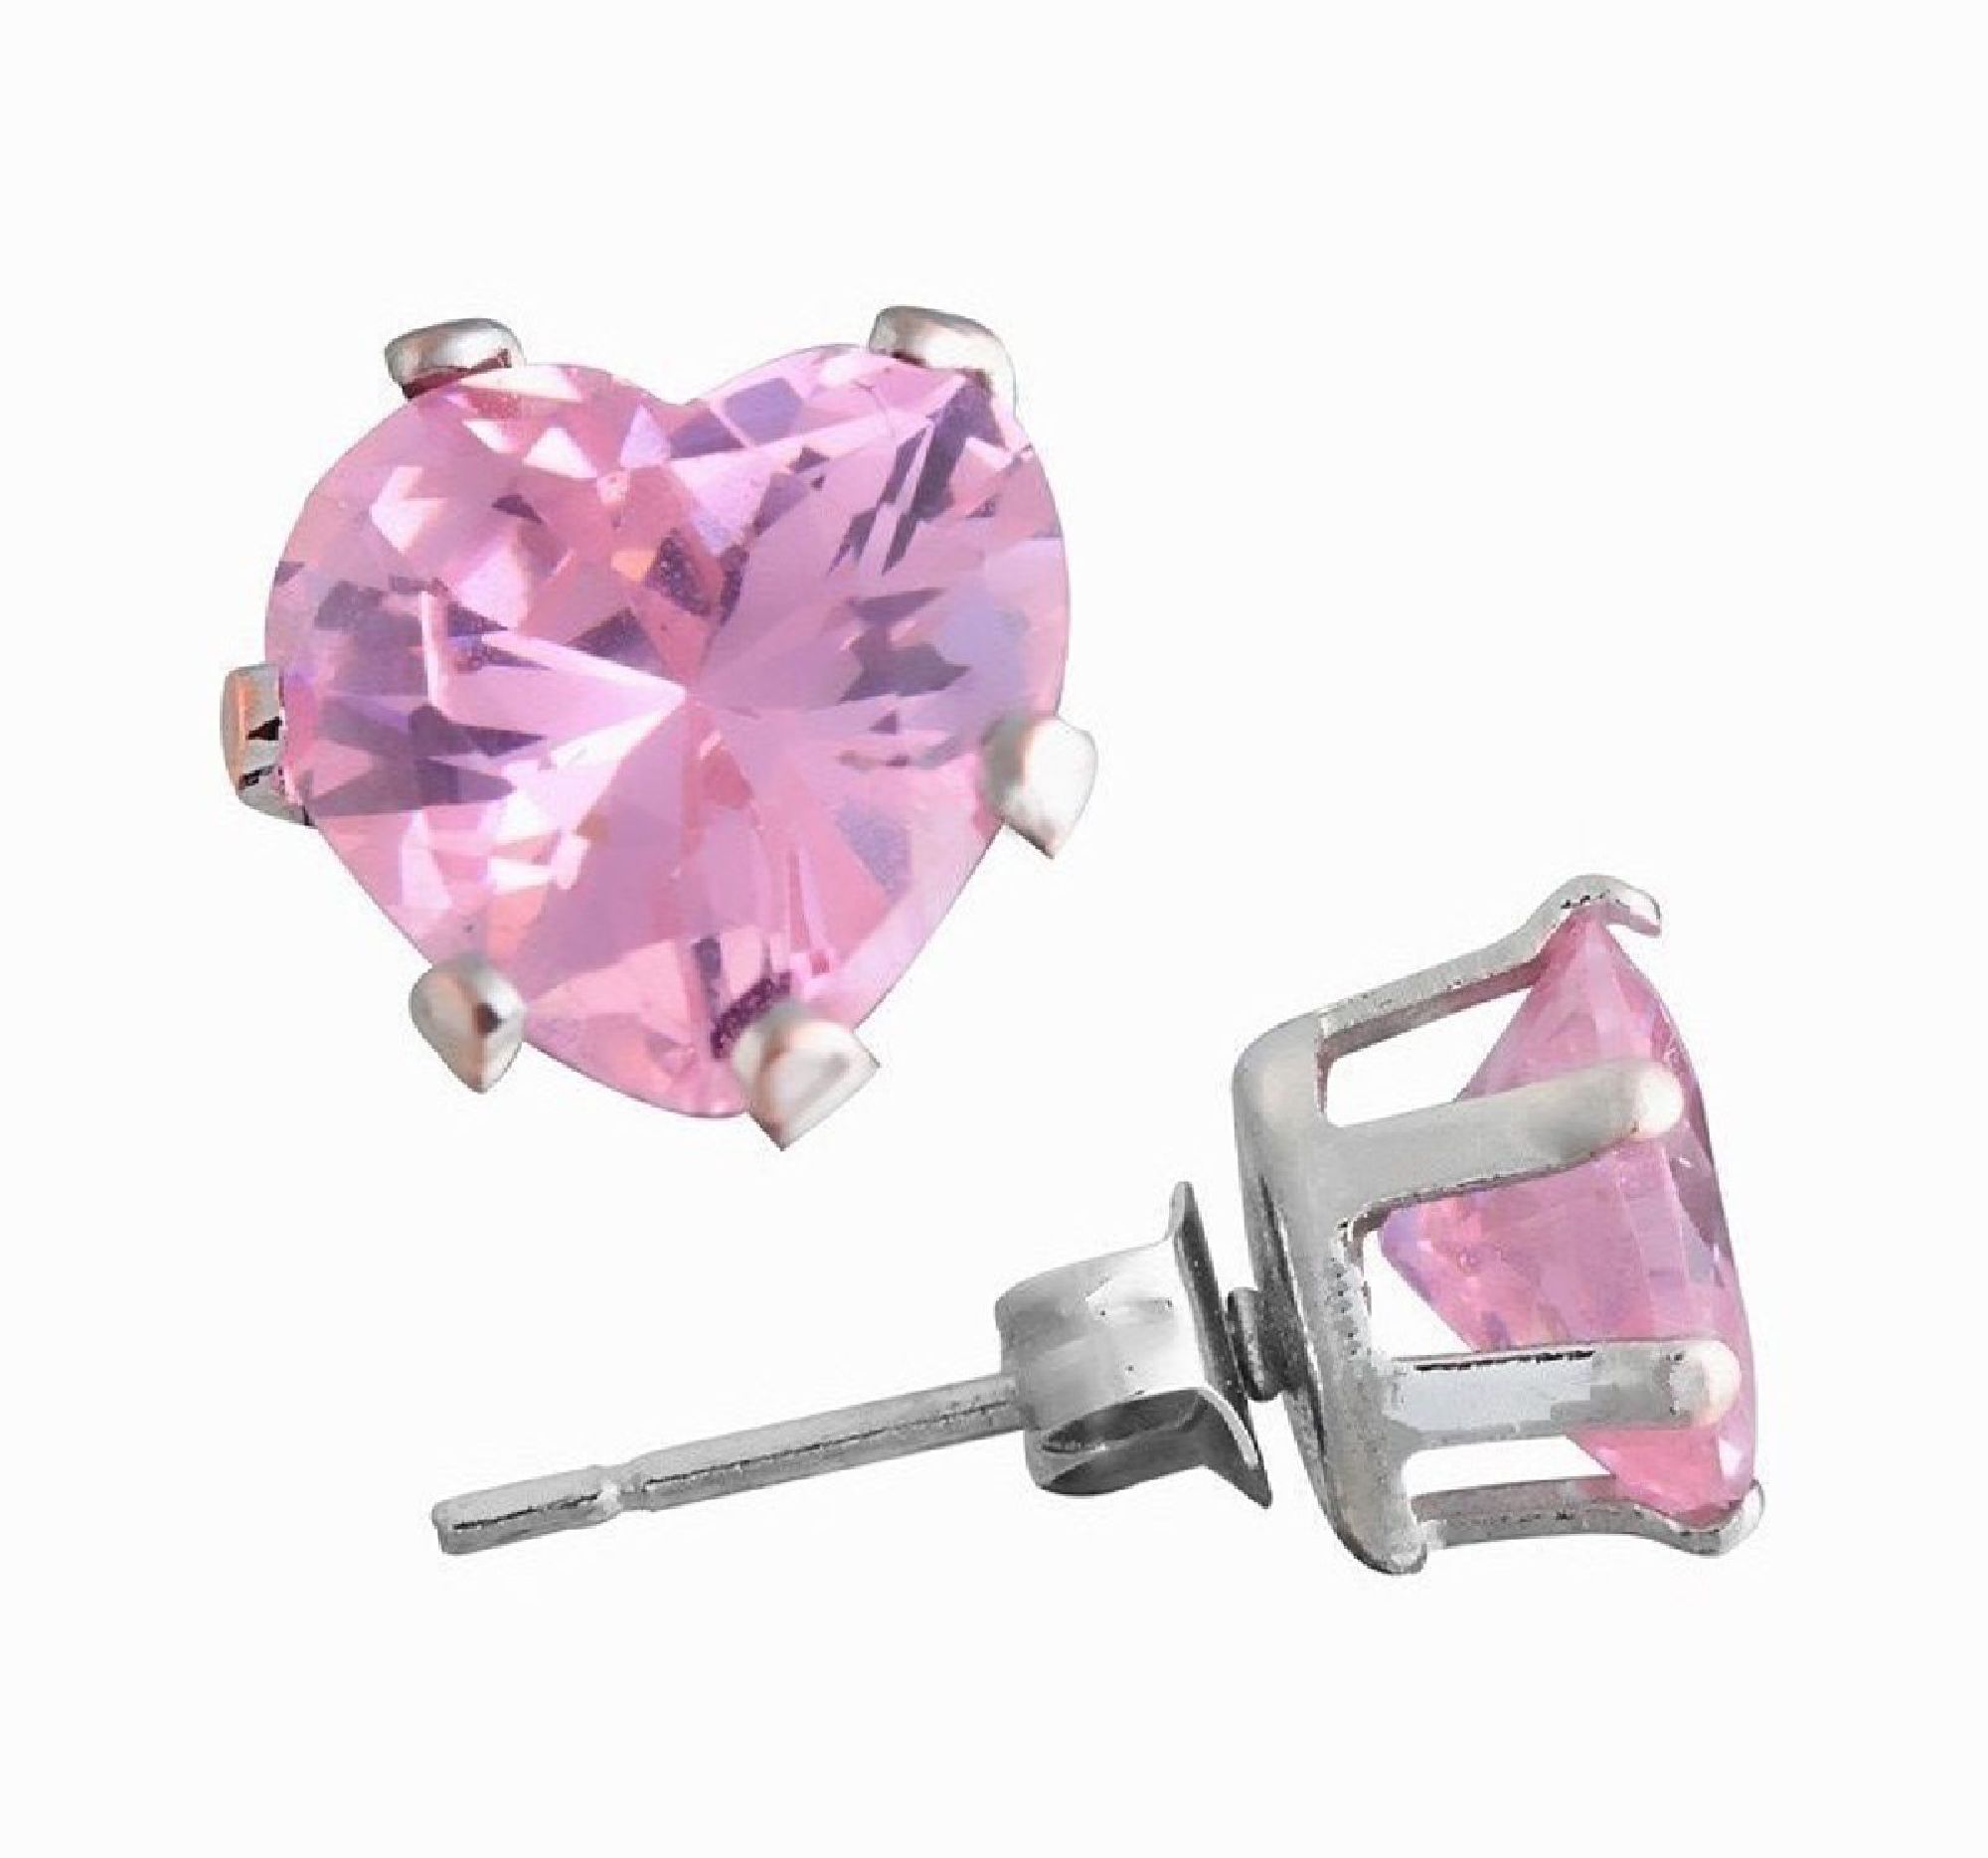 ParisJewelry.com 2 Carat Heart Shape Pink Diamond manmade Stud Earrings for Men in Sterling Silver Designed in France